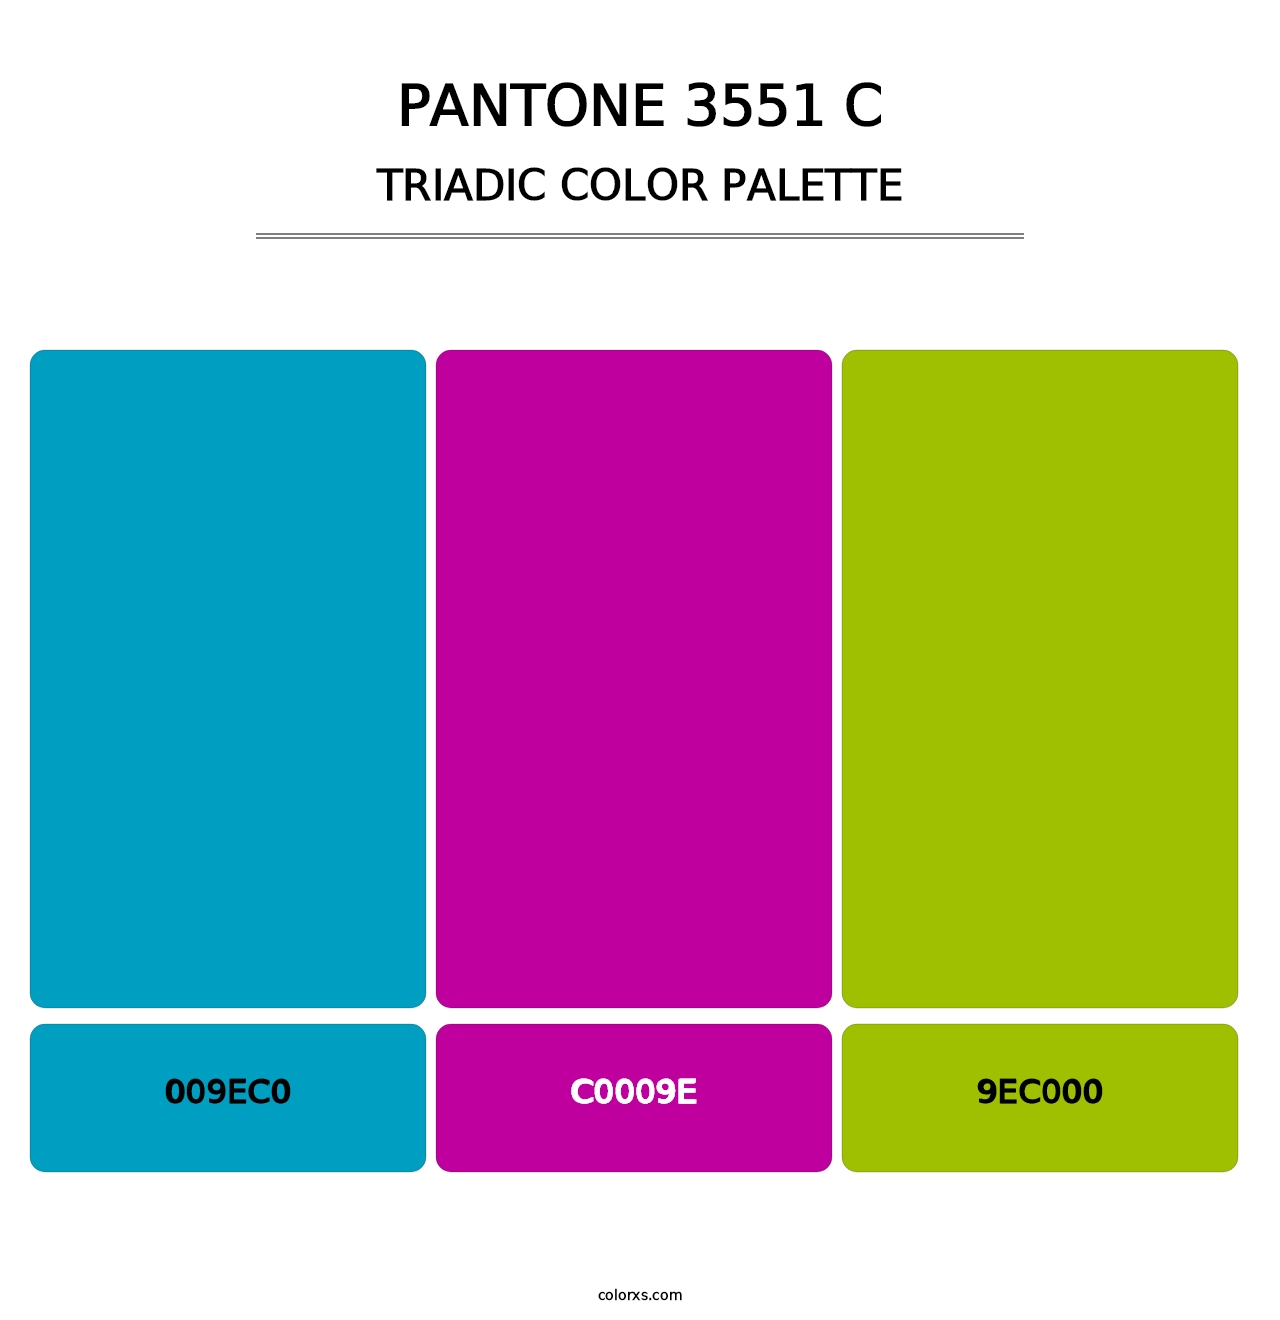 PANTONE 3551 C - Triadic Color Palette